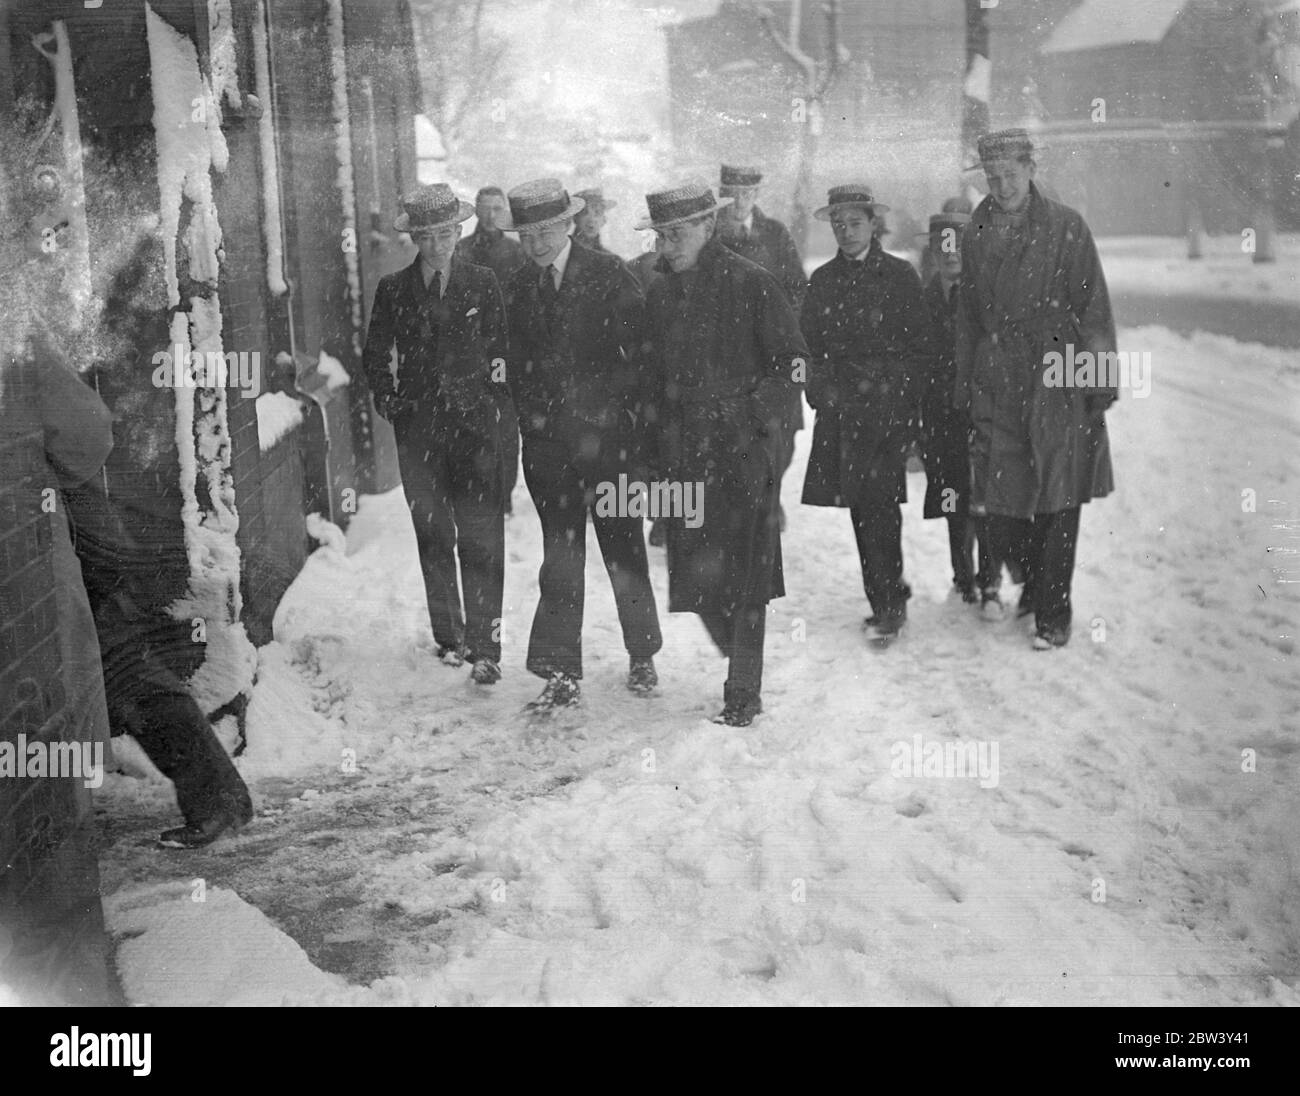 Chapeaux de paille dans la neige . Un contraste particulier dans la neige, alors que les écoliers éclos en paille marchaient dans les rues blanches de Highgate dans la tempête de neige lourde de Londres aujourd'hui . ( dimanche ) . 7 mars 1937 Banque D'Images